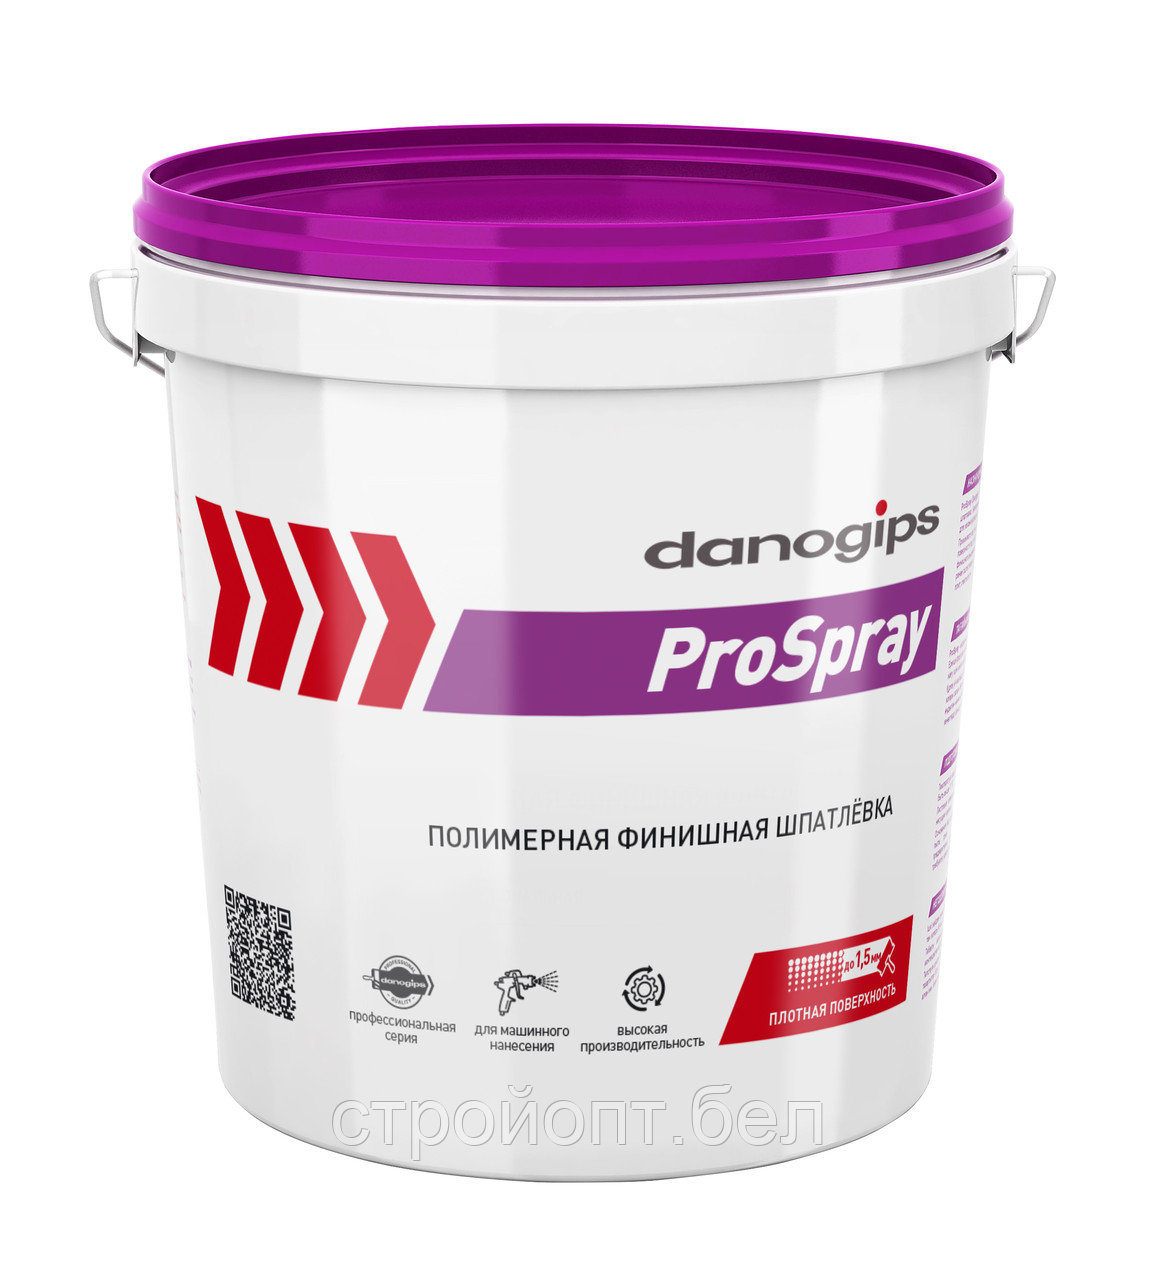 Суперфинишная полимерная шпатлевка для механизированного нанесения DANOGIPS ProSpray, 25 кг, РФ